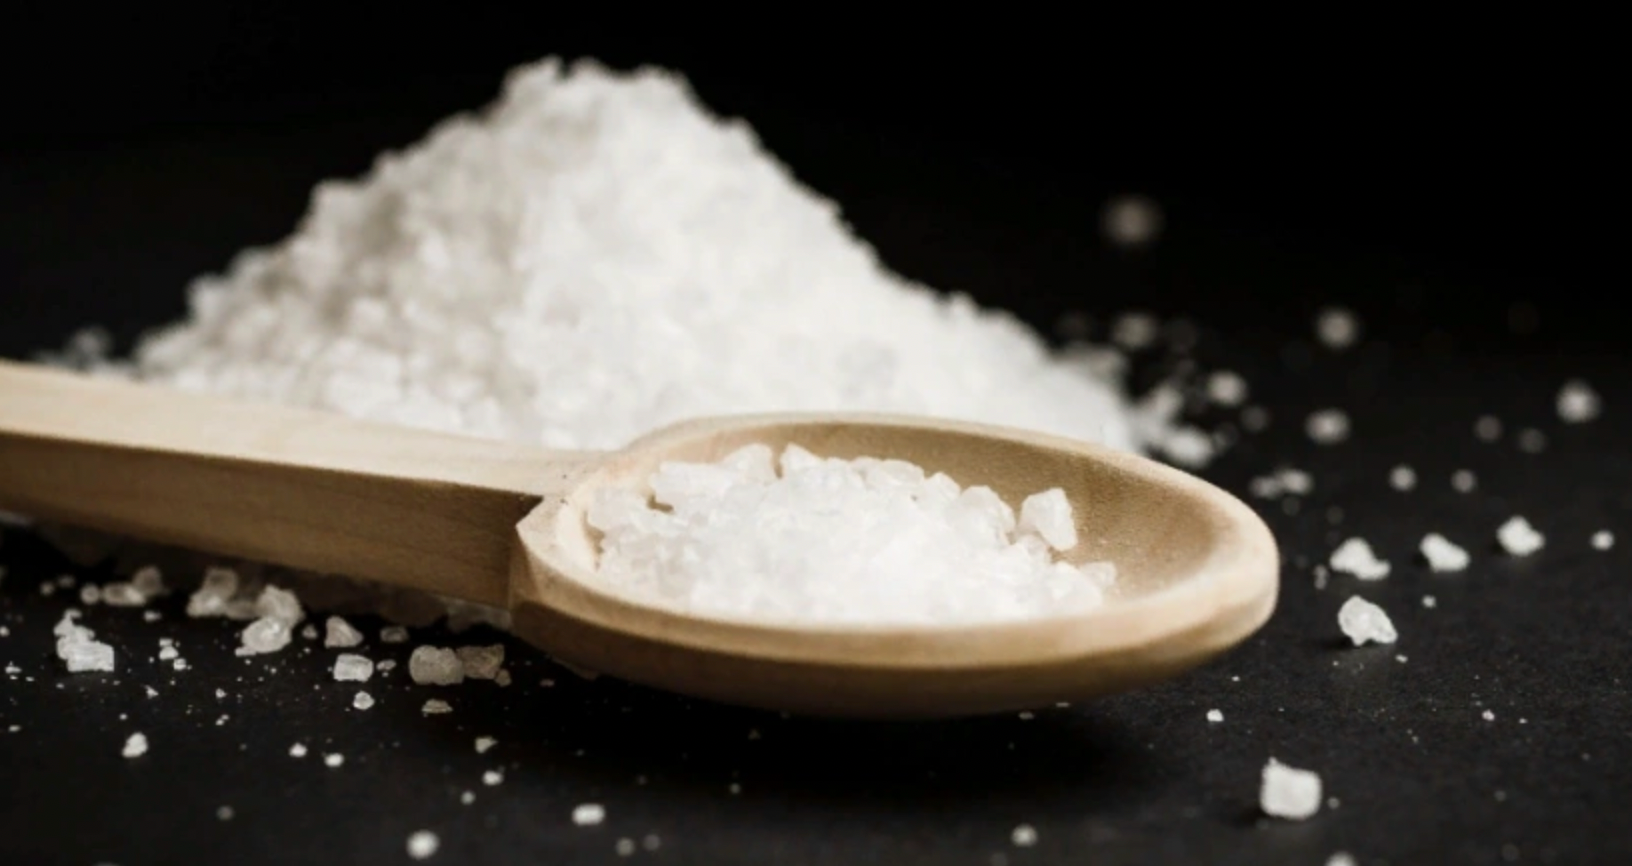 Посыпьте соль у порога и спите спокойно: старая хитрость актуальна и сегодня